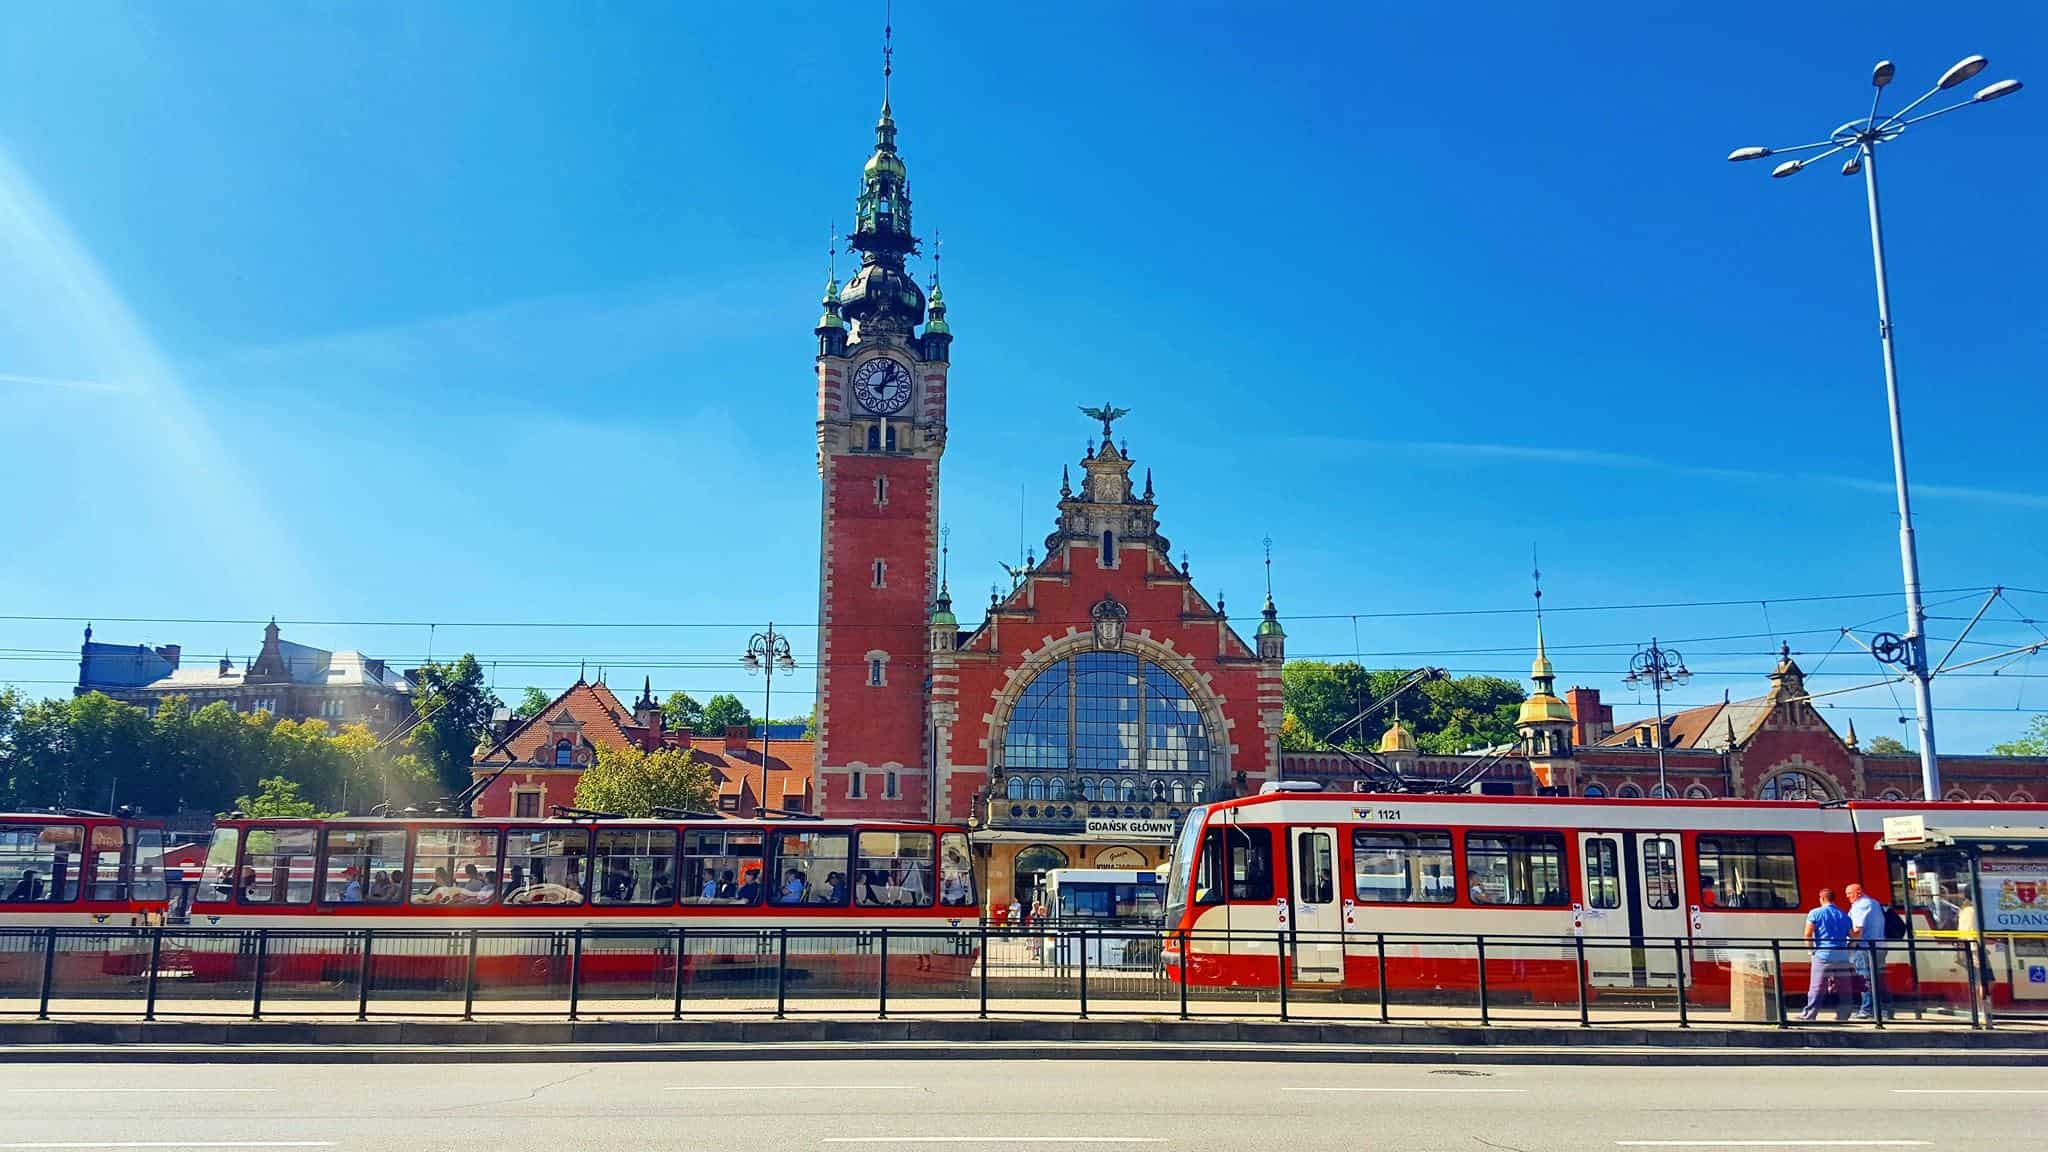 Gdańsk - Poland train station